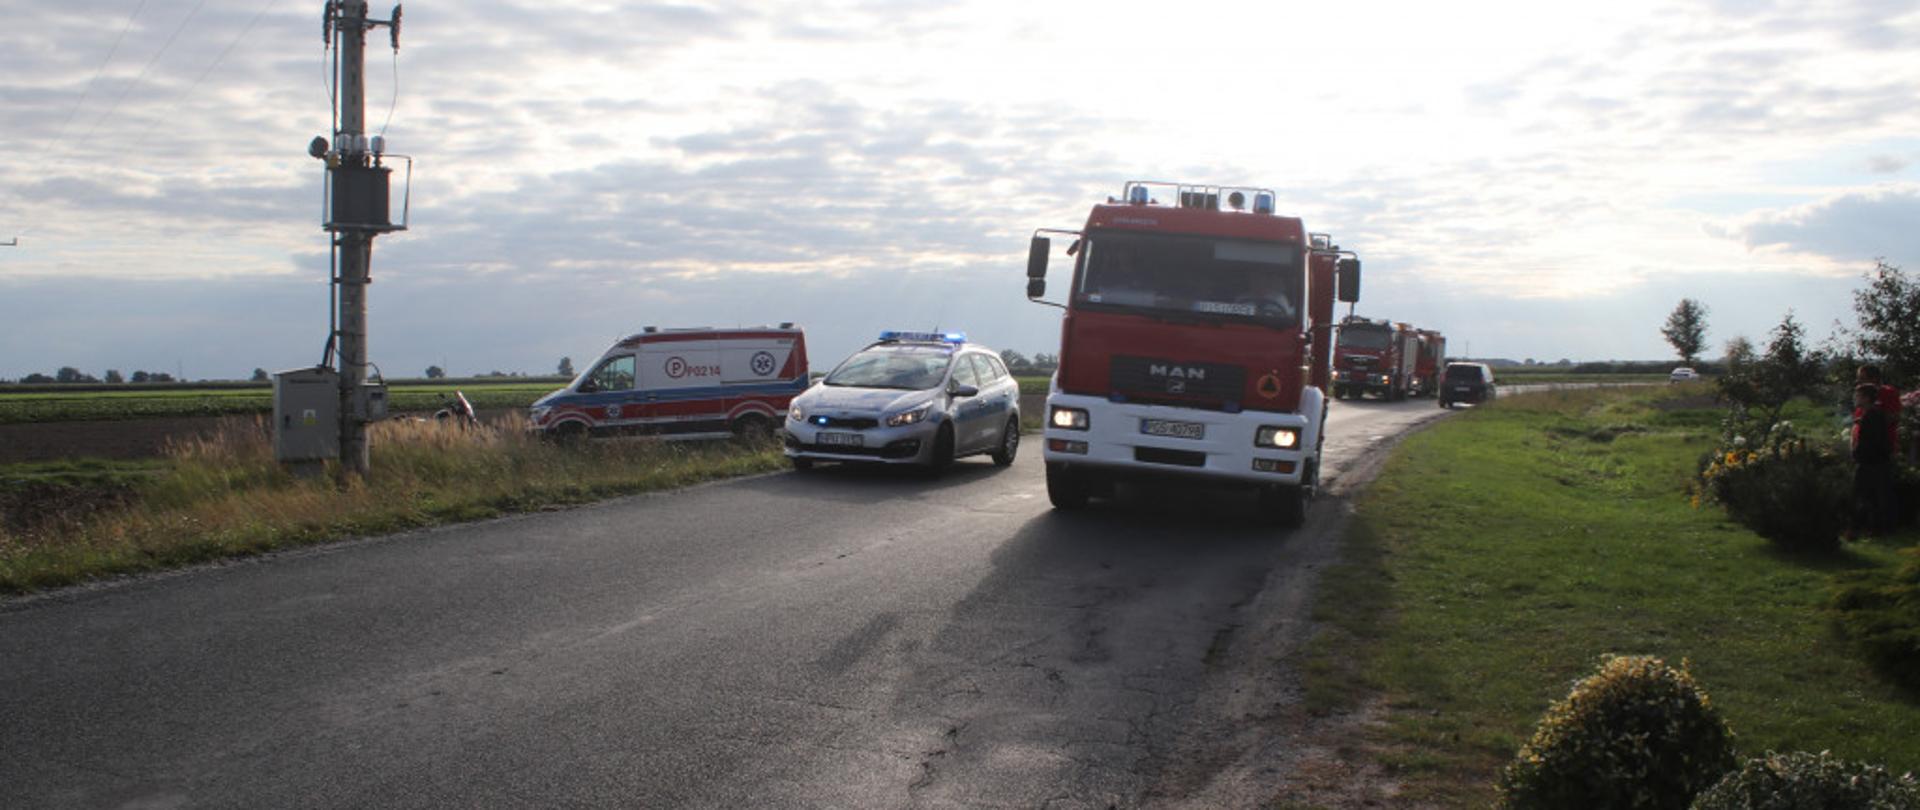 Zdjęcie przedstawia samochód pożarniczy, patrol Policji oraz karetkę pogotowia podczas działań przy wypadku.